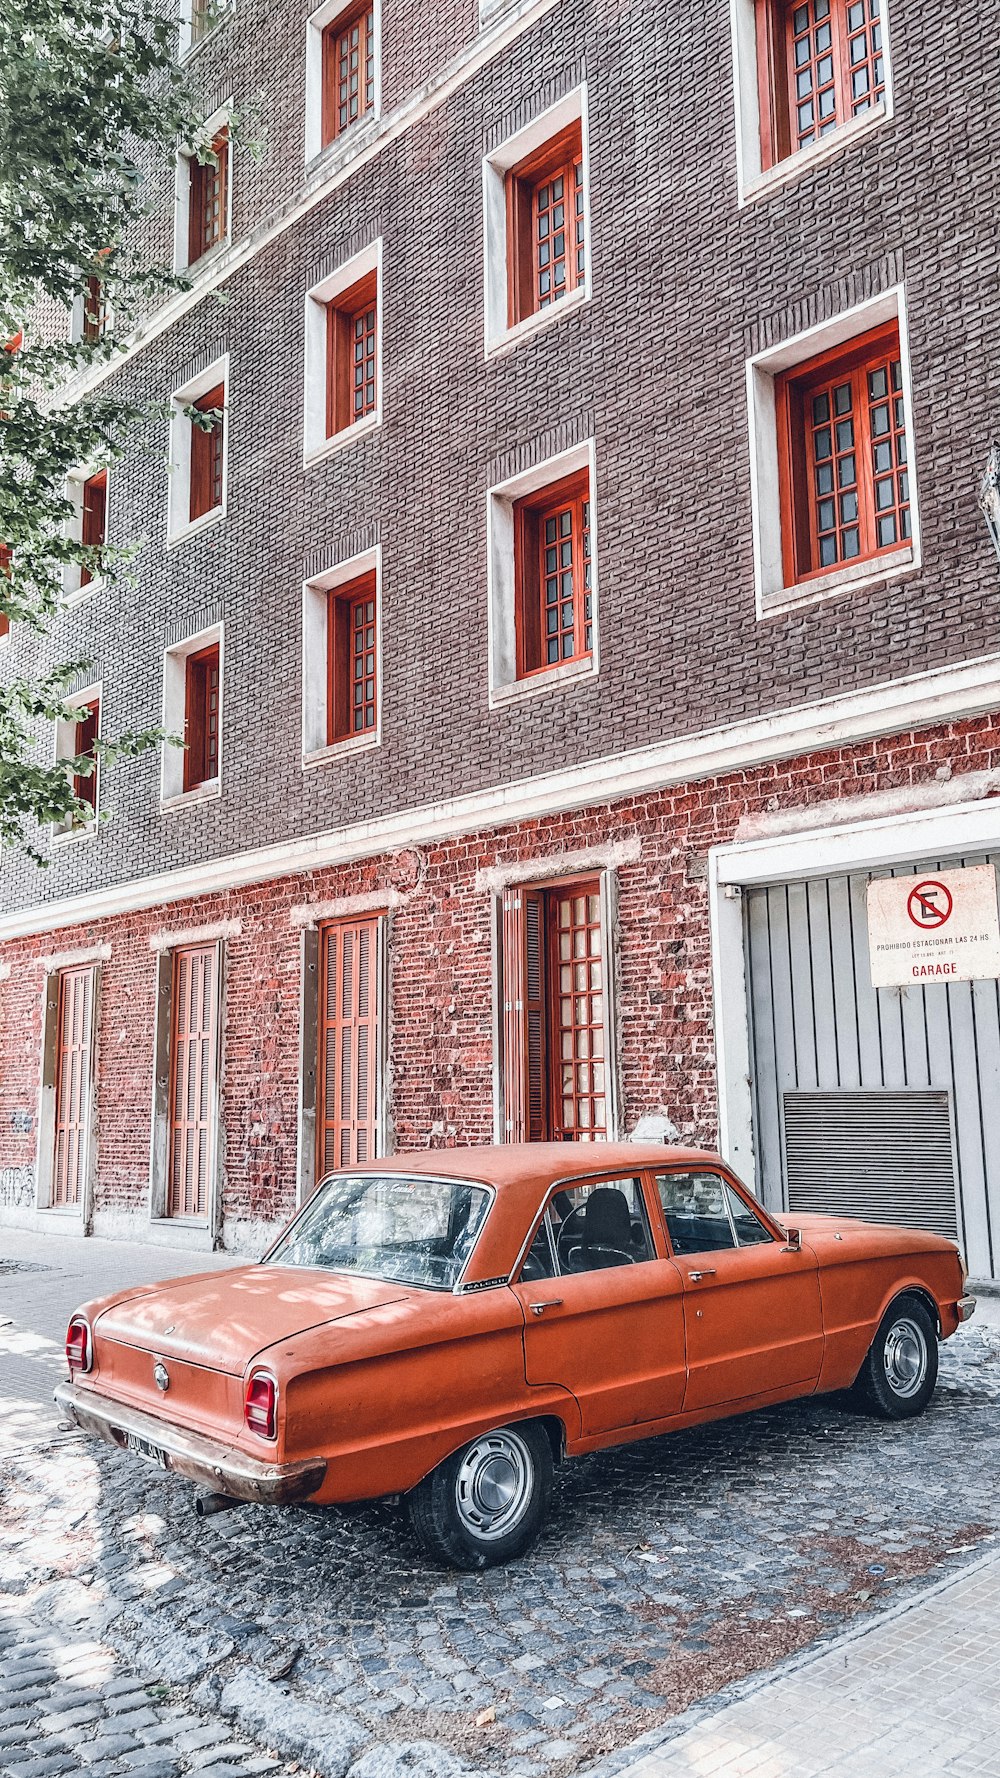 Une voiture orange garée devant un bâtiment en briques